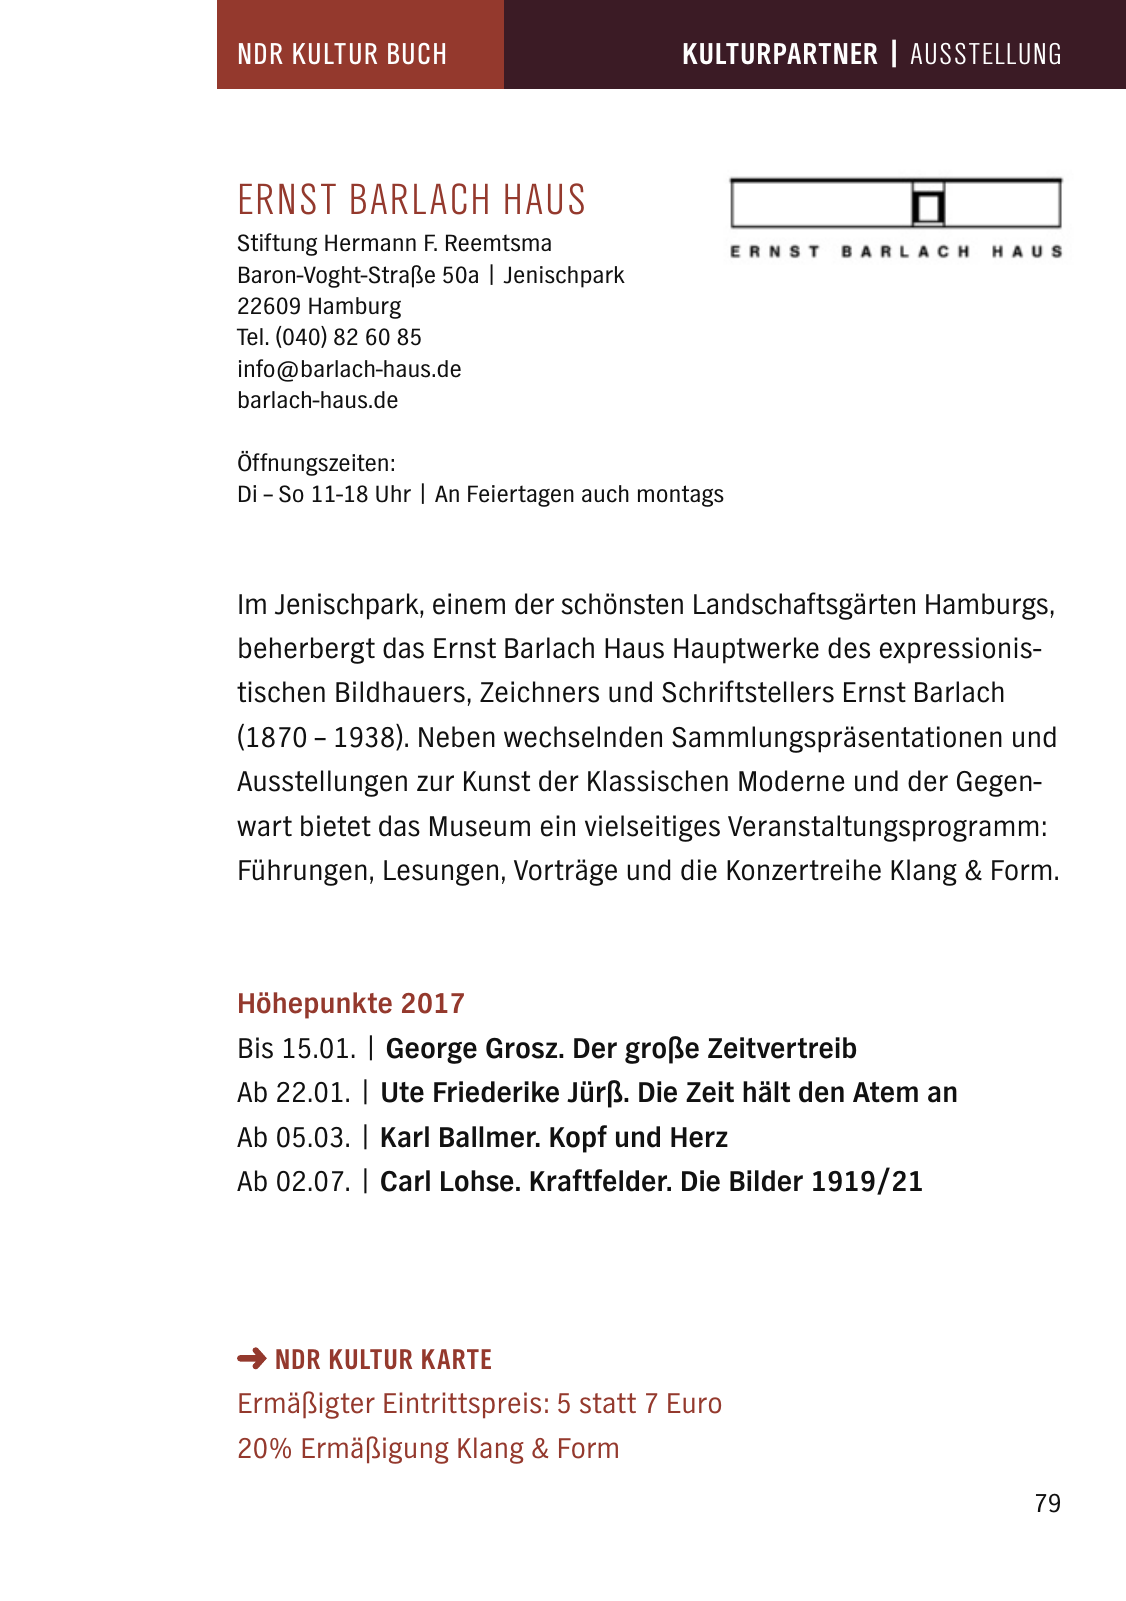 Vorschau NDR Kultur Buch 2017 Seite 81